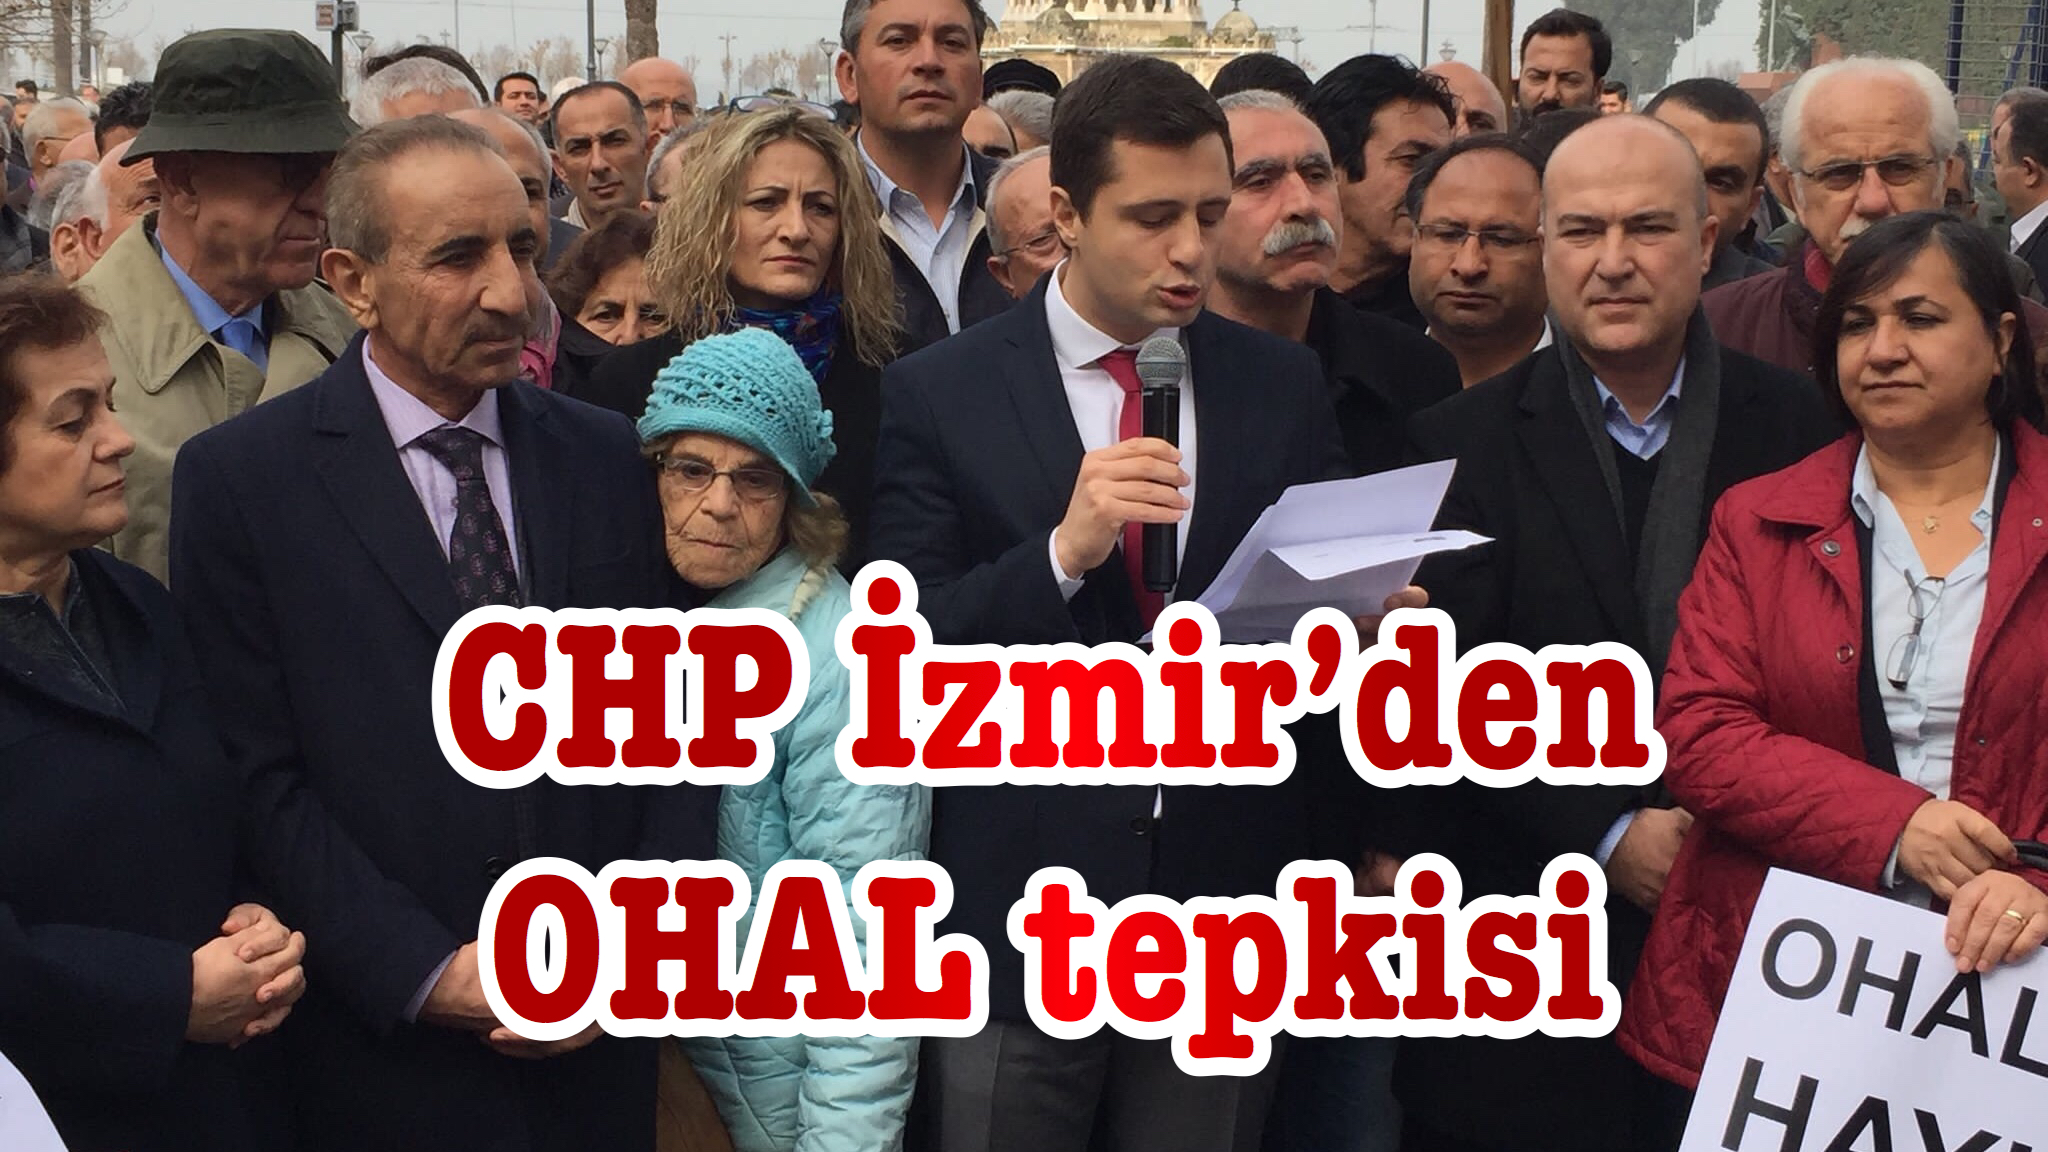 CHP İzmir’den OHAL tepkisi